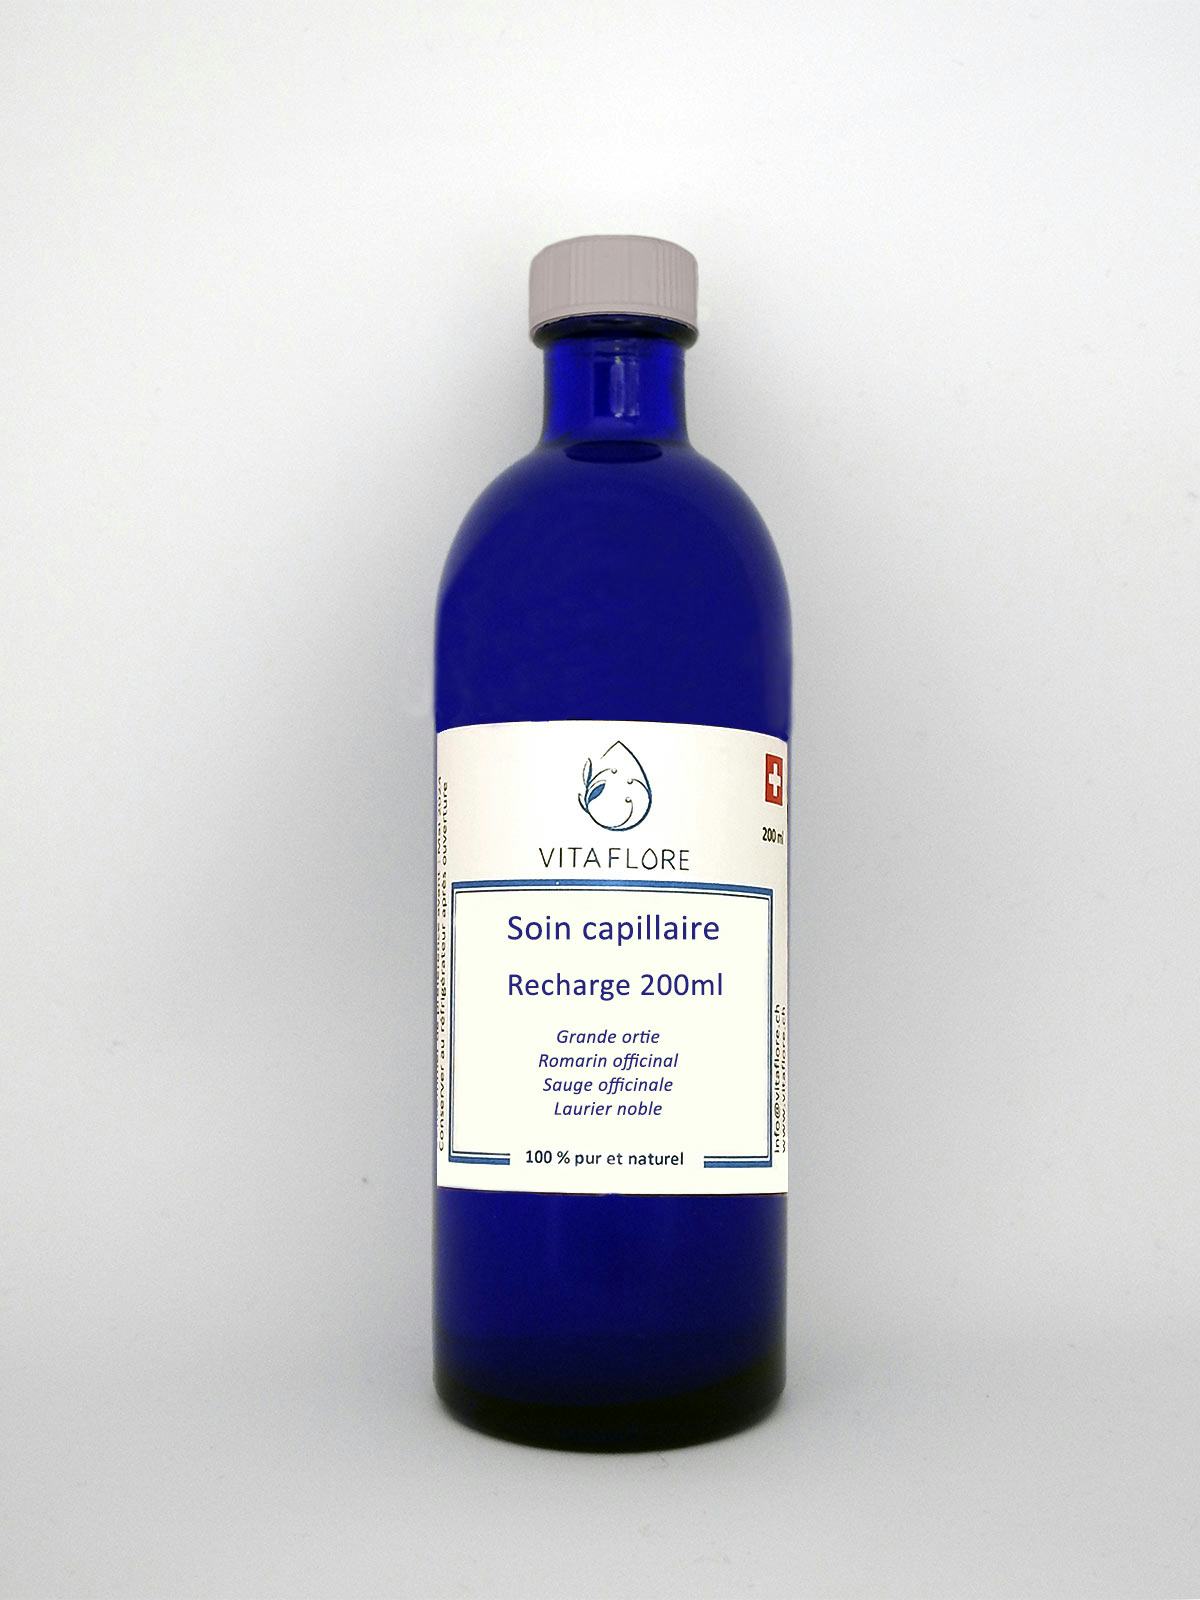 Synergie von Hydrolaten – Haarpflege – 200 ml Nachfüllung, handwerkliches Produkt für den Direktverkauf in der Schweiz